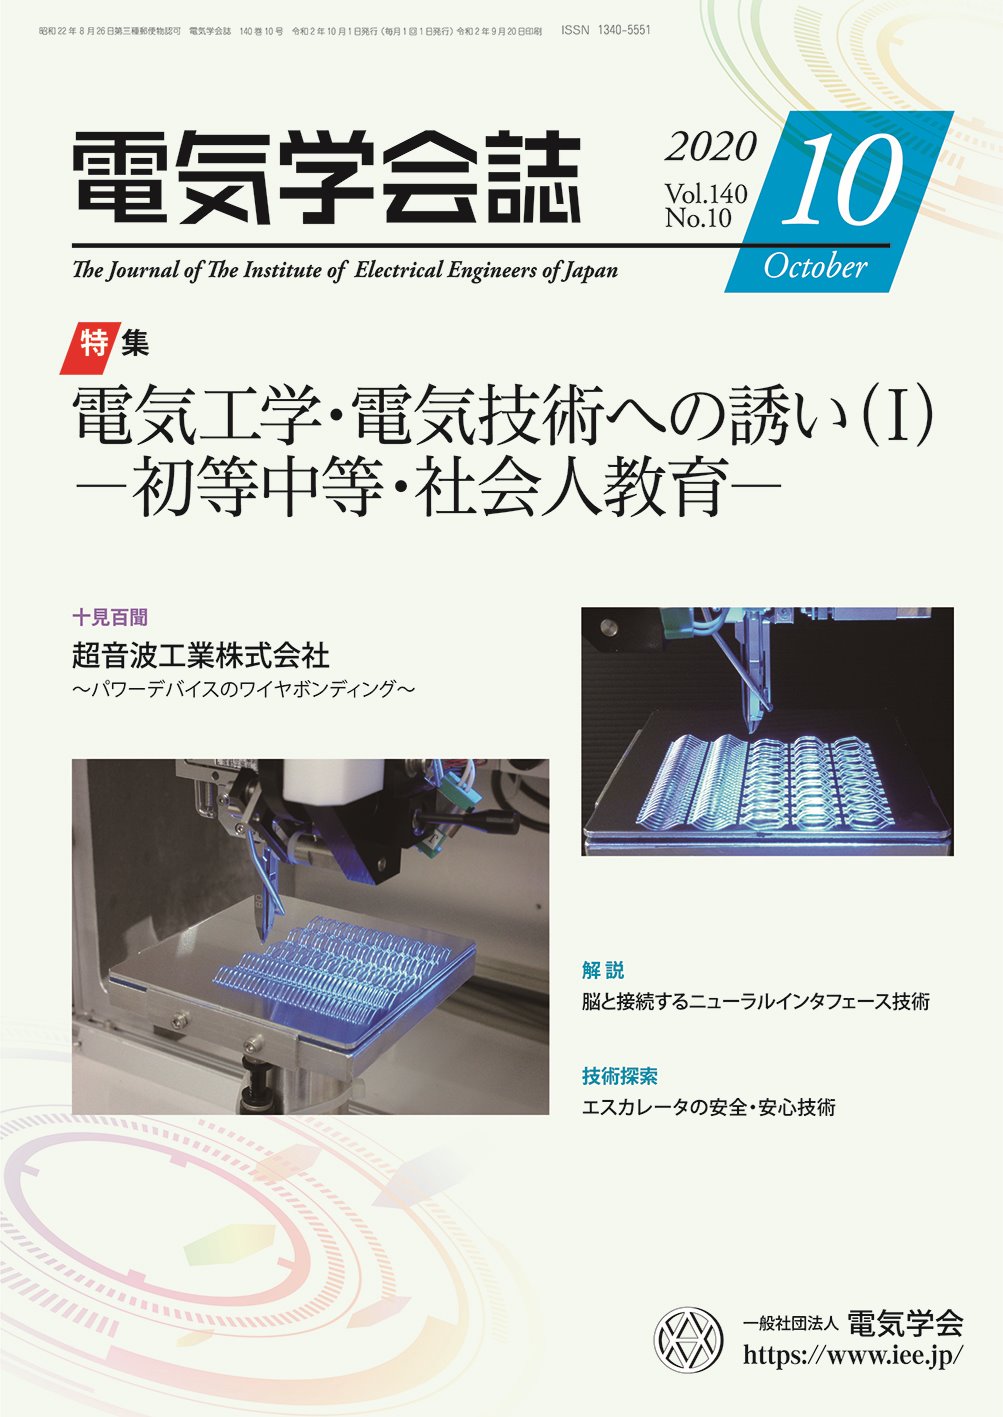 電気学会誌（10月号）に超音波ワイヤボンダの記事が掲載されました。